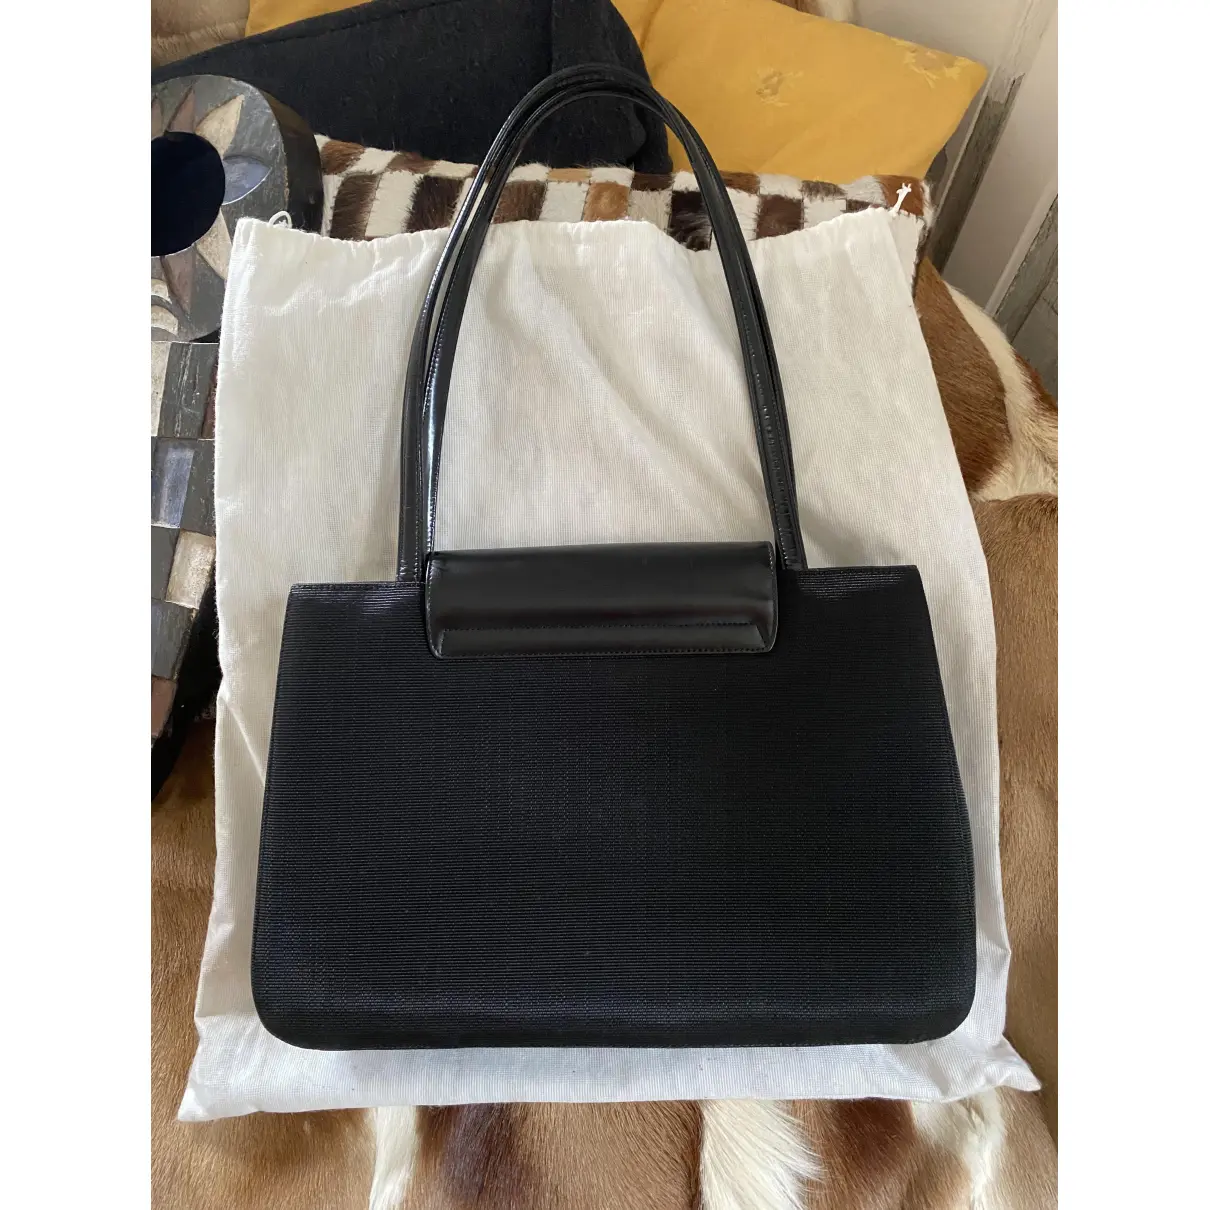 Buy Dior Cloth handbag online - Vintage